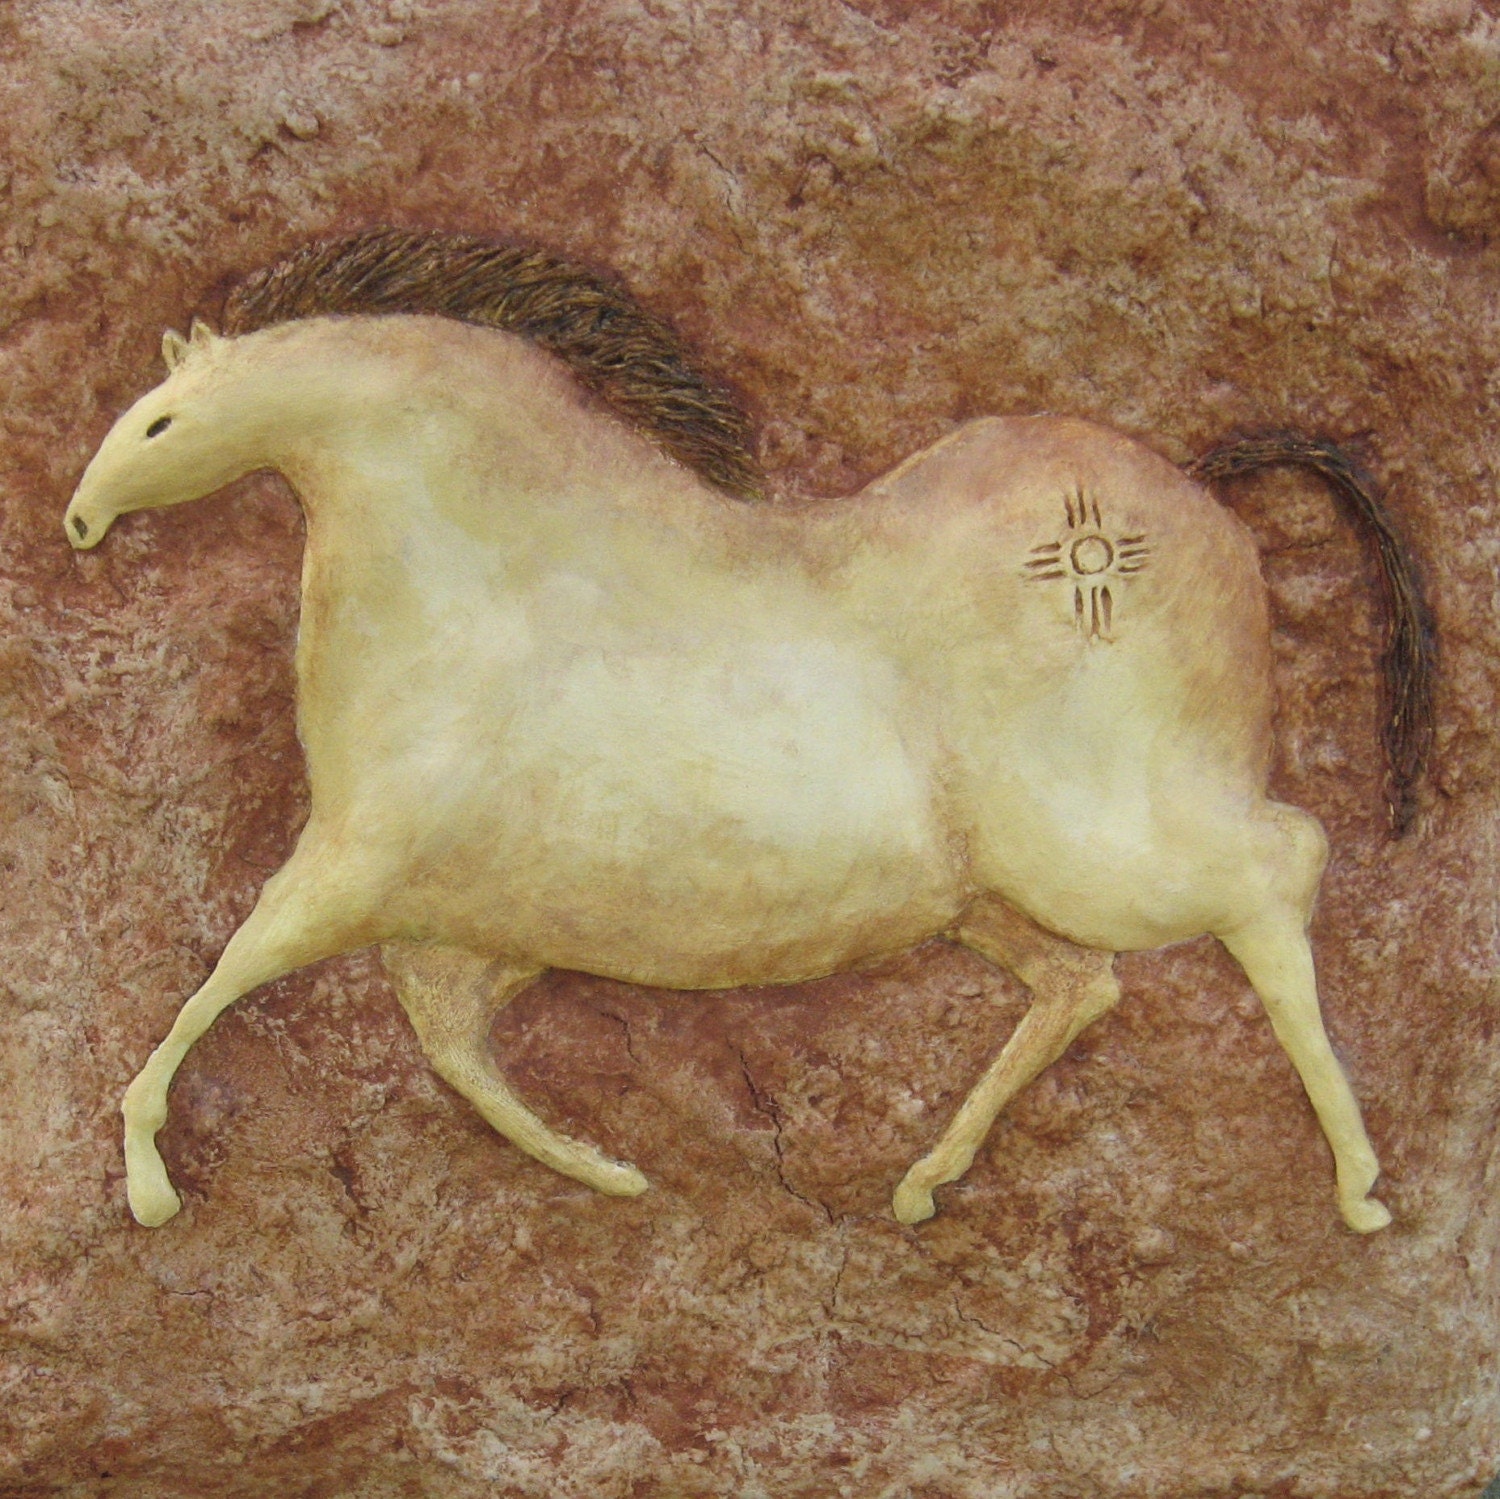 Horse Wall Art